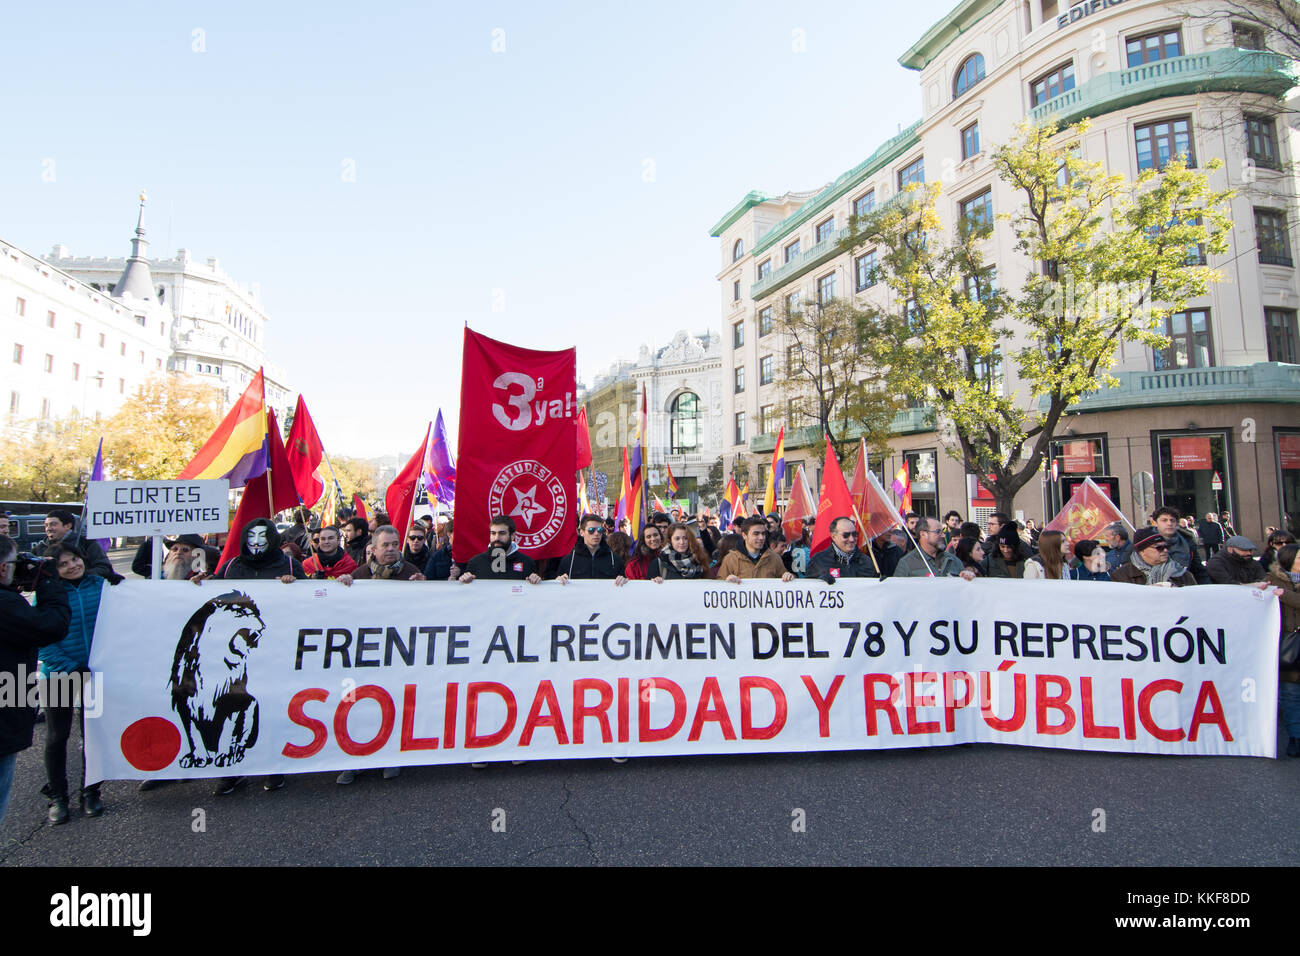 Madrid, Spagna. 6 dicembre, 2017. banner del "Coordinadora 25s' durante la dimostrazione che rivendicano per la terza repubblica spagnola svoltasi a Madrid. © valentin sama-rojo/alamy live news. Foto Stock